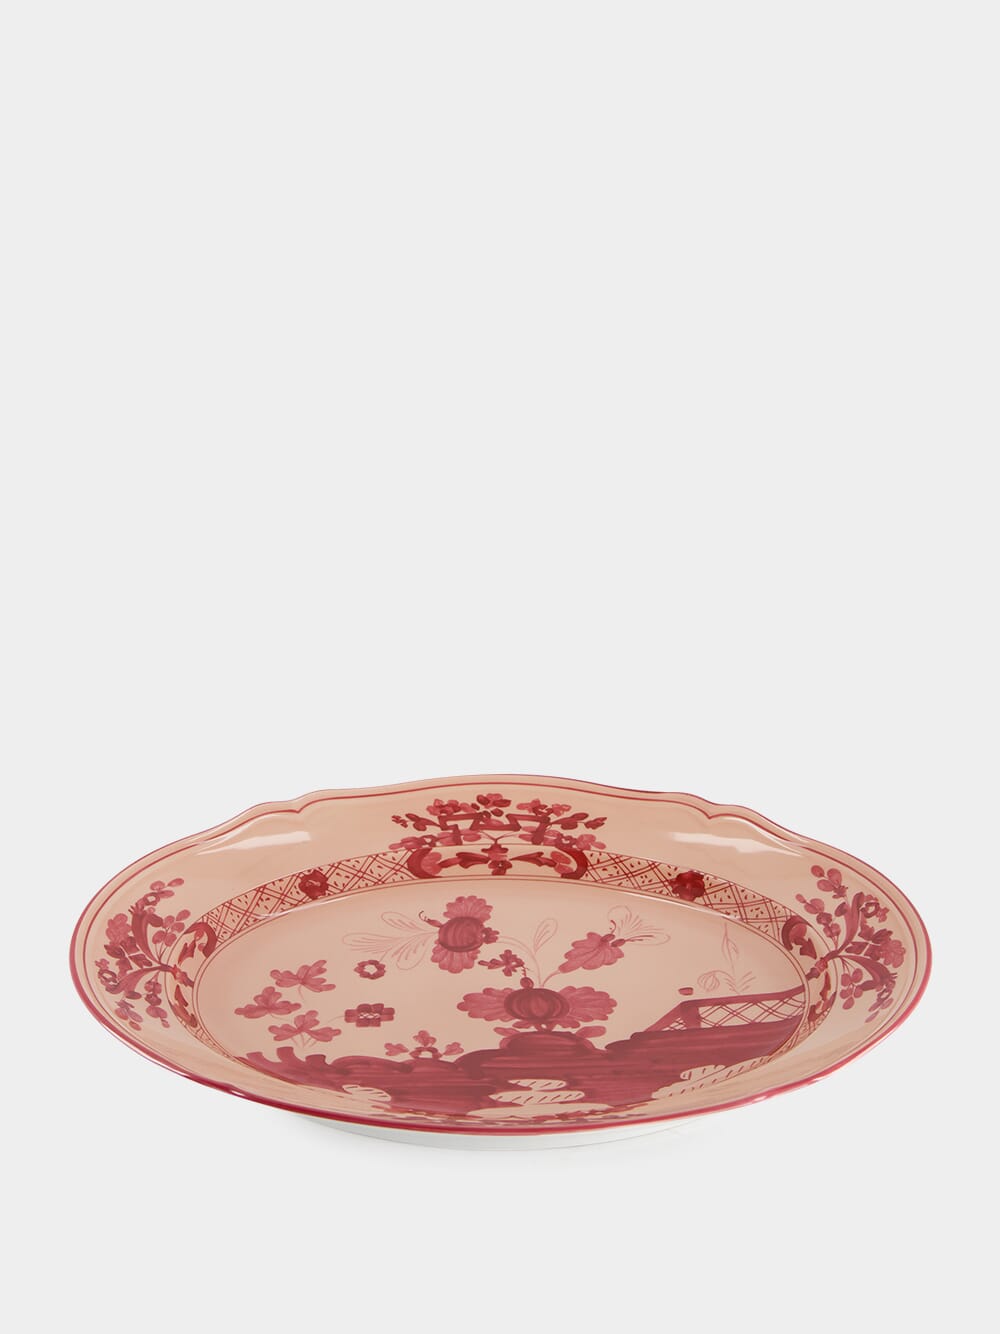 Oriente Italiano Vermiglio Oval Platter